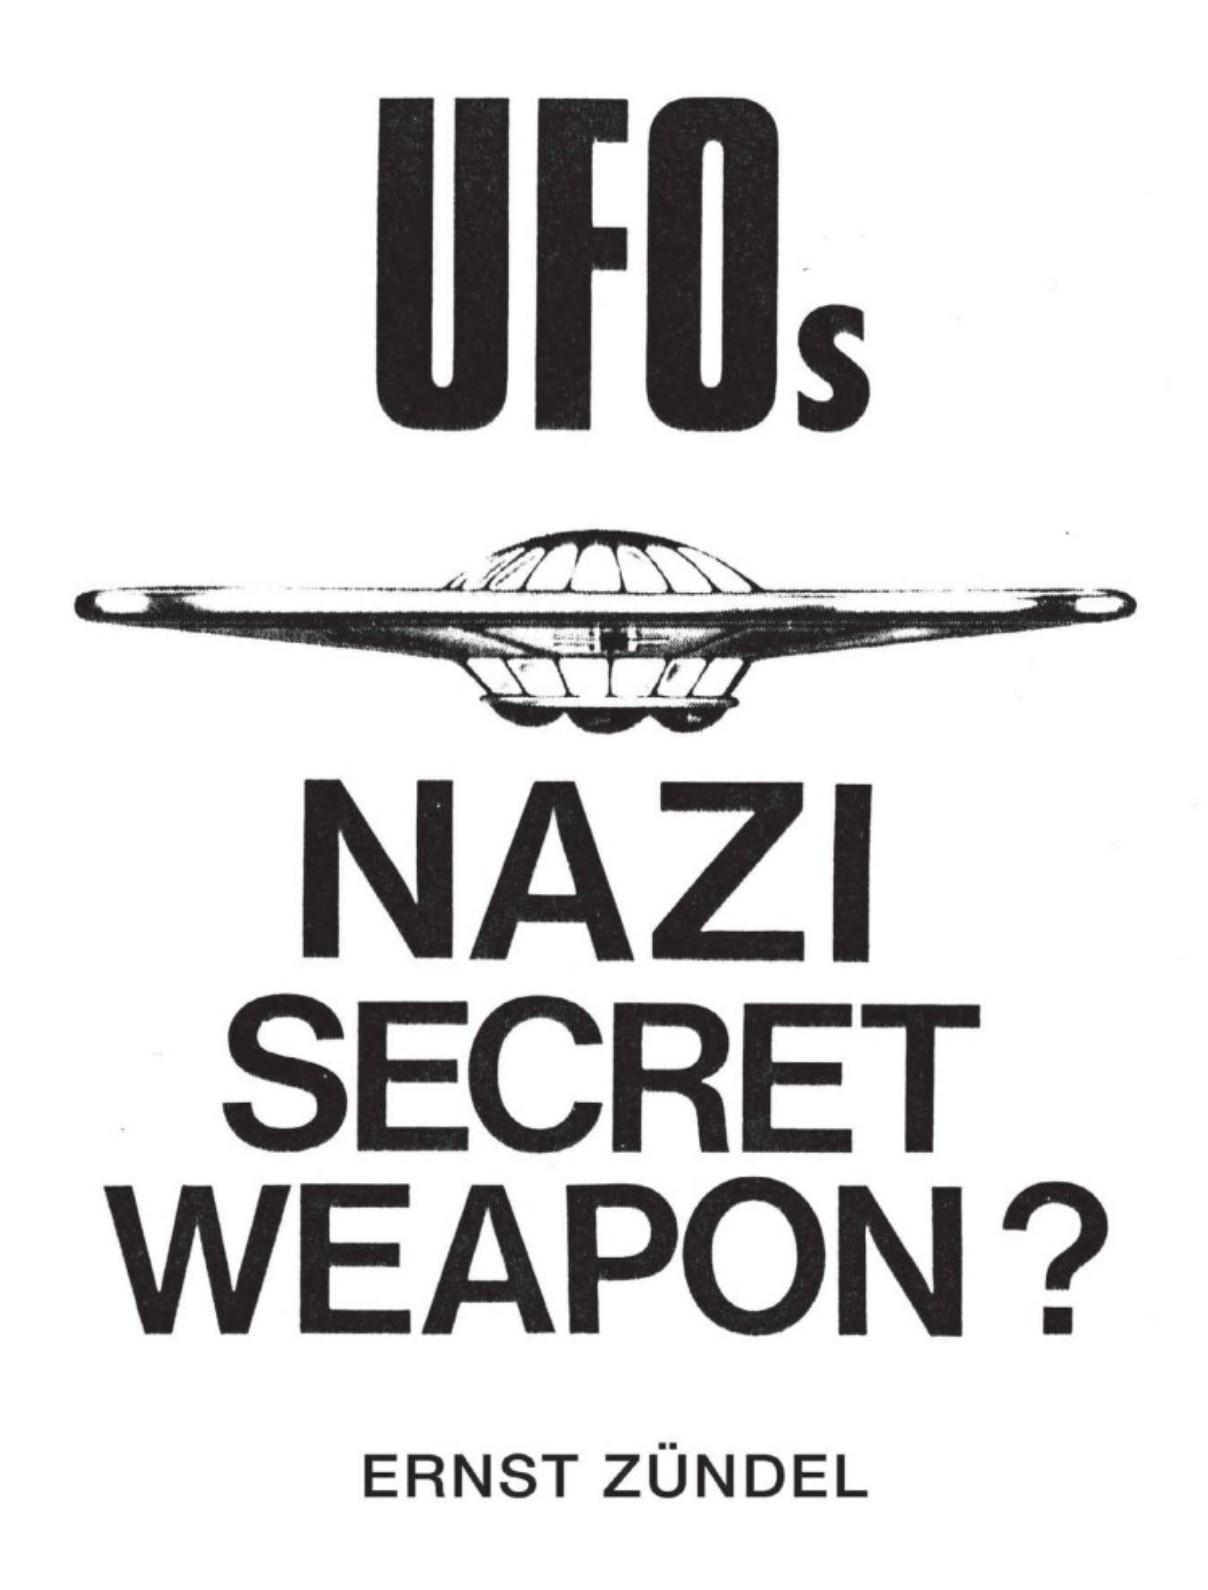 UFOs: Nazi Secret Weapon (1974) by Ernst Zundel